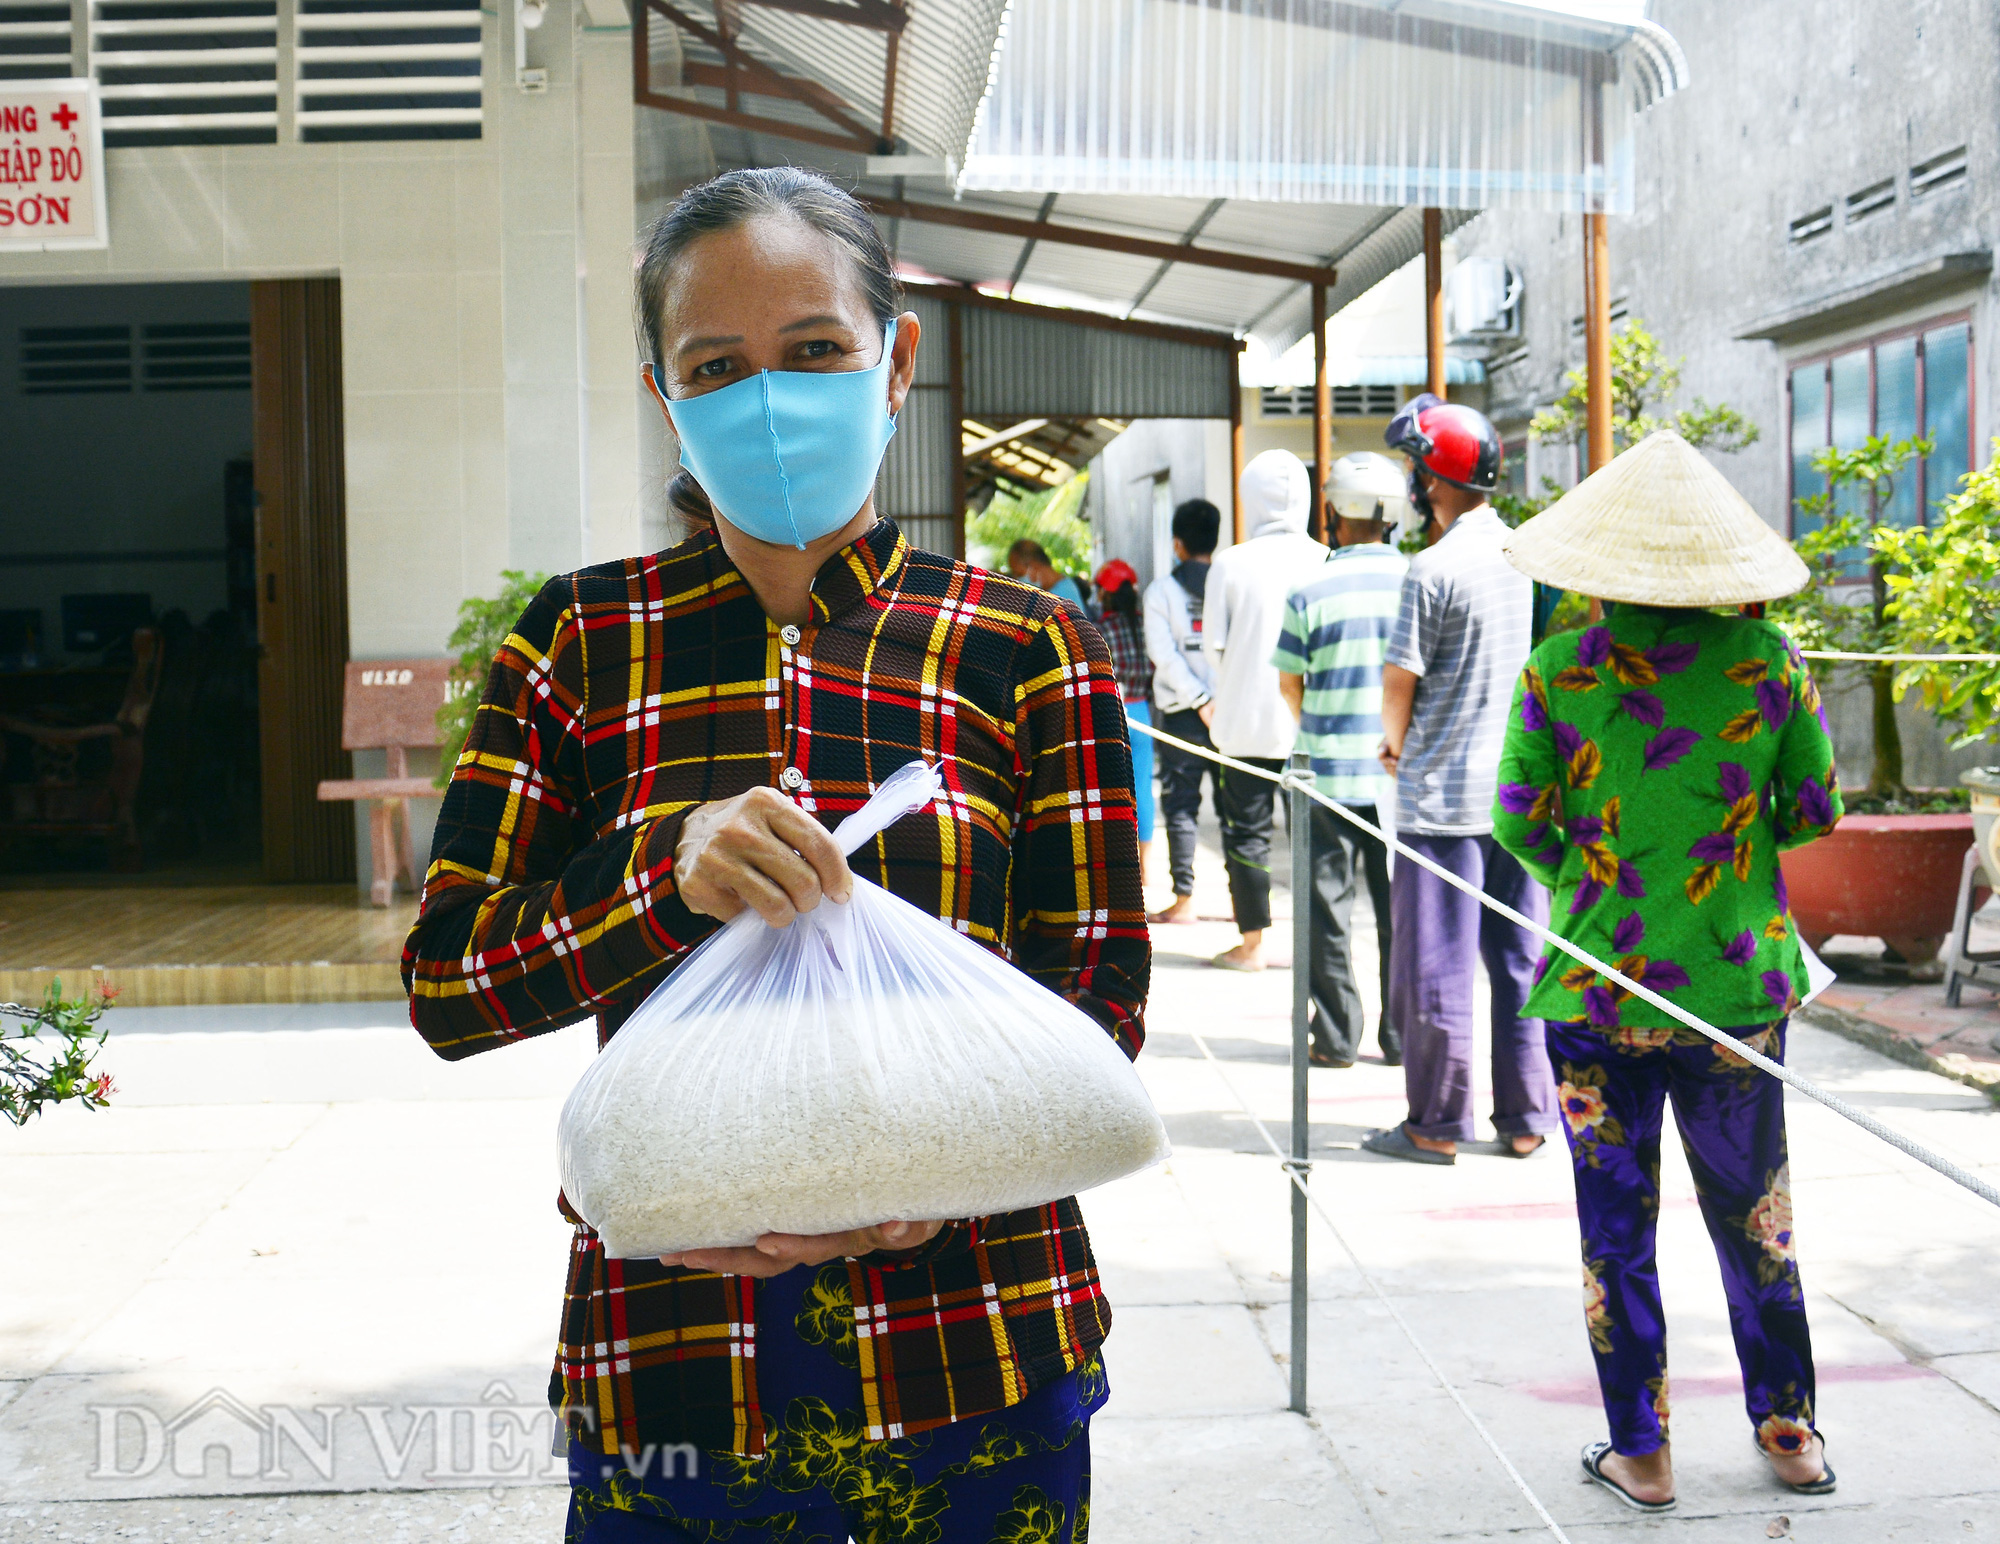 Kiên Giang: “ATM gạo” về vùng nông thôn, dân nghèo đỡ khổ - Ảnh 1.